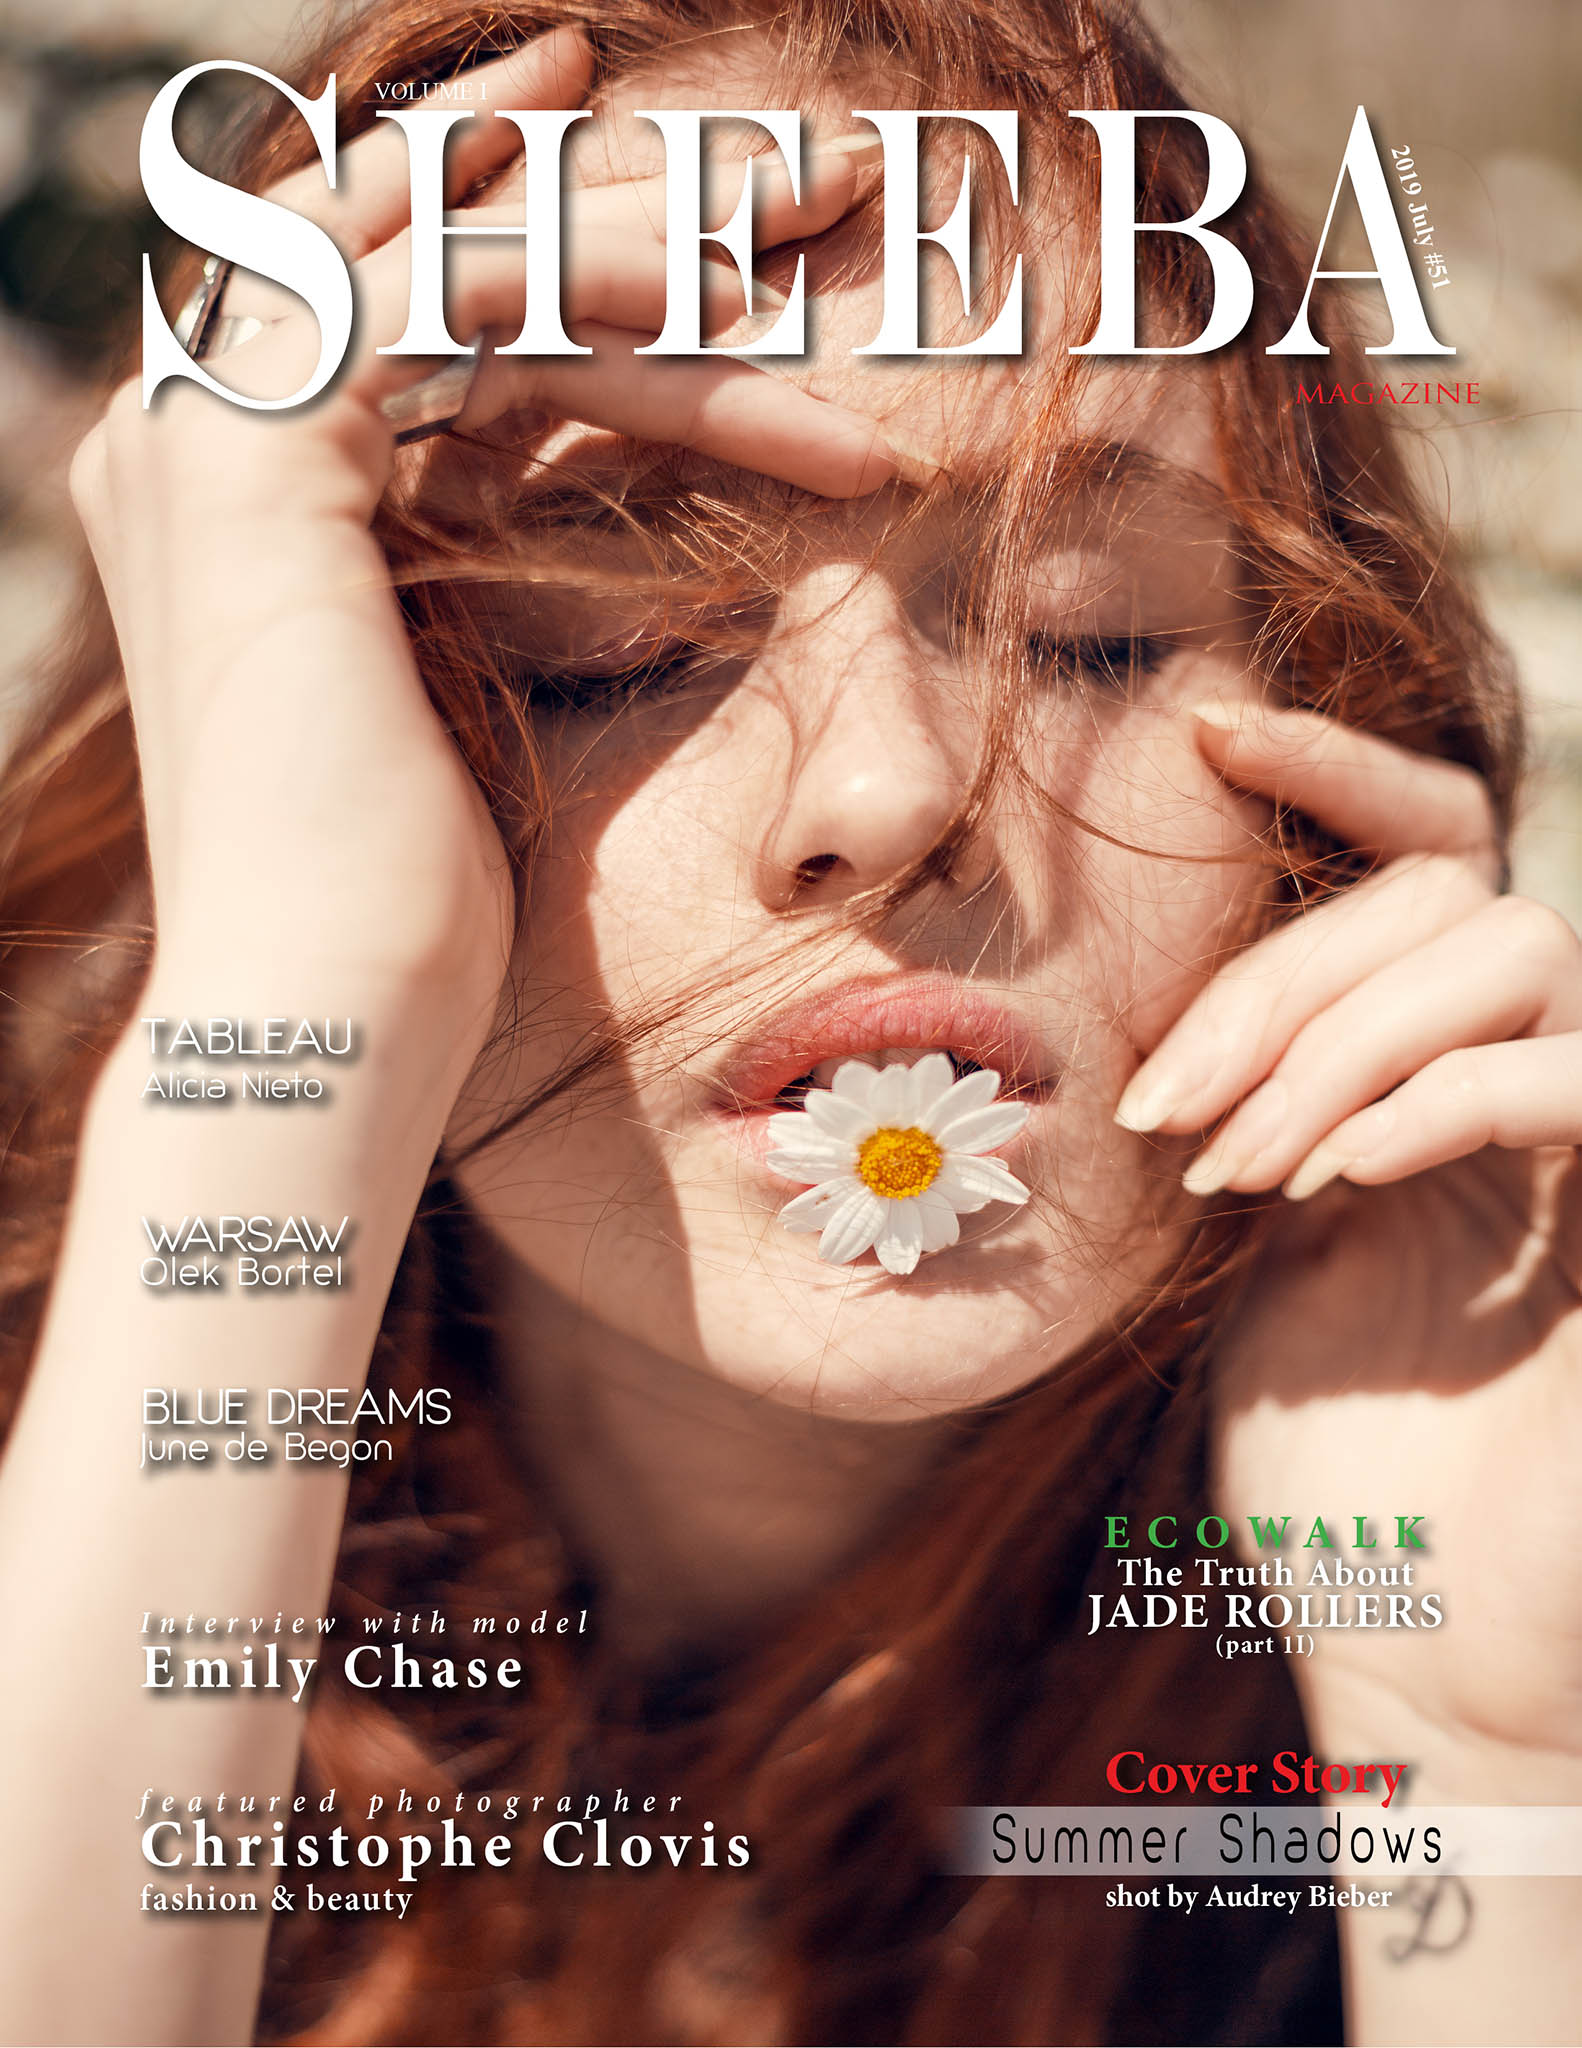 British Sheeba Magazine